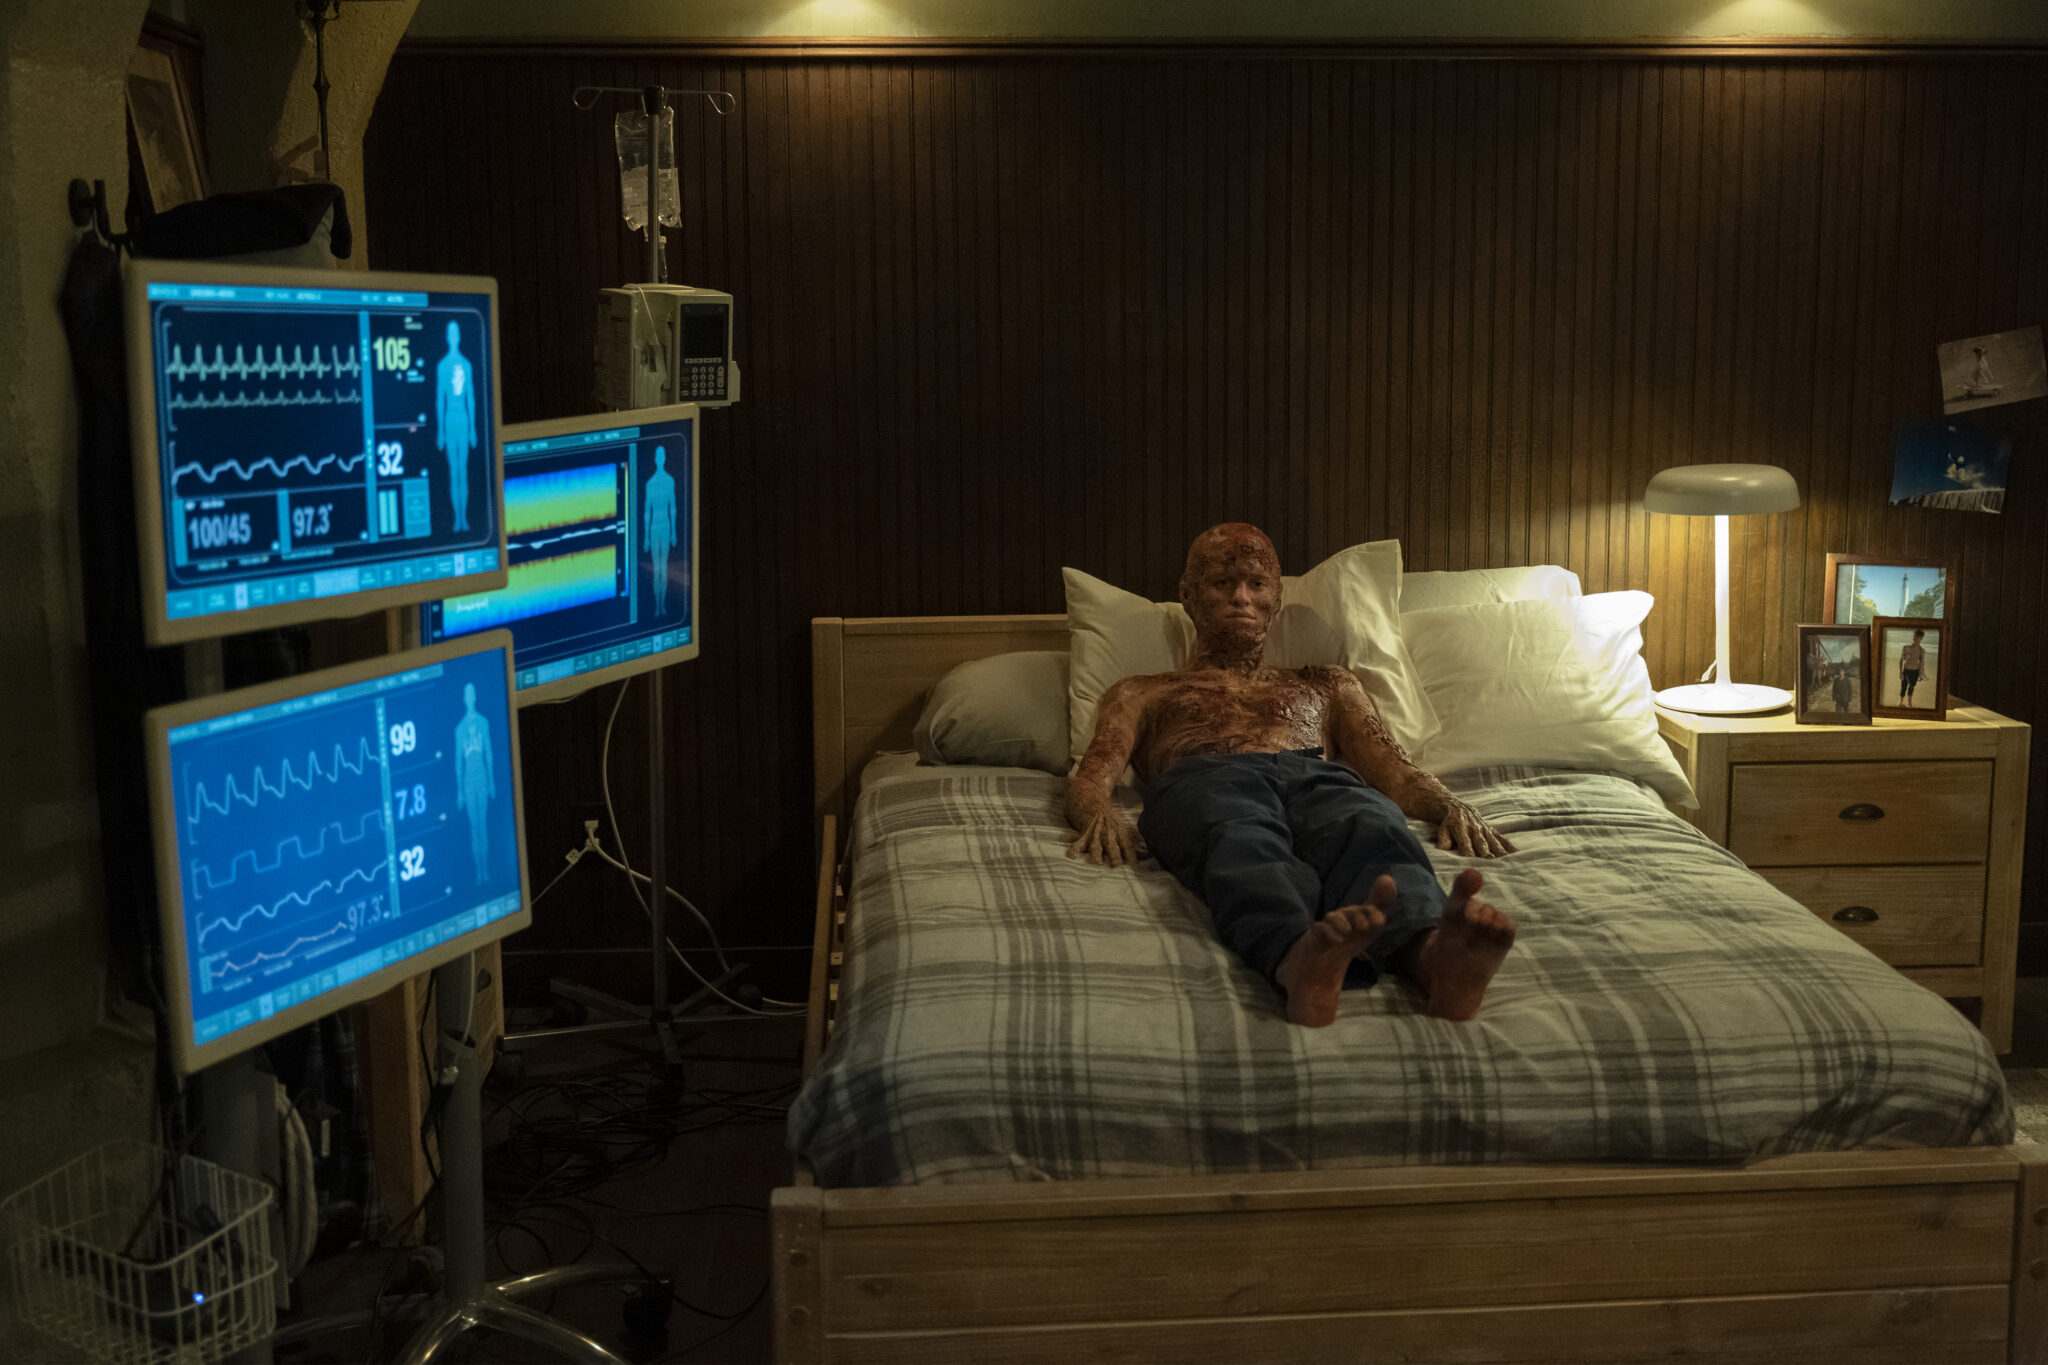 Jacob Busler als verbrannter Vampir in einem Bett liegend. Links einige Monitore mit medizinischen Anzeigen.